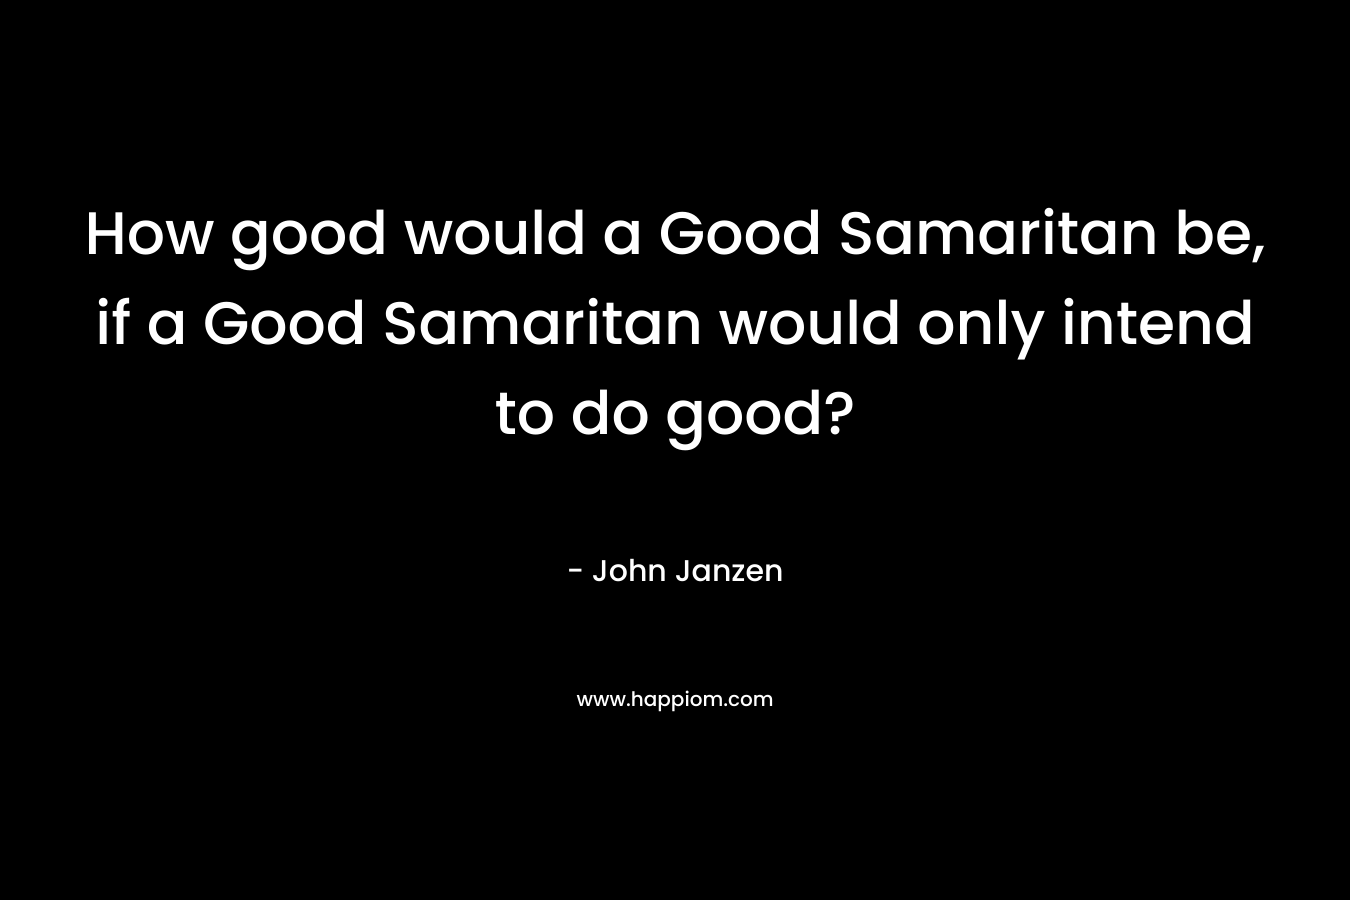 How good would a Good Samaritan be, if a Good Samaritan would only intend to do good? – John Janzen